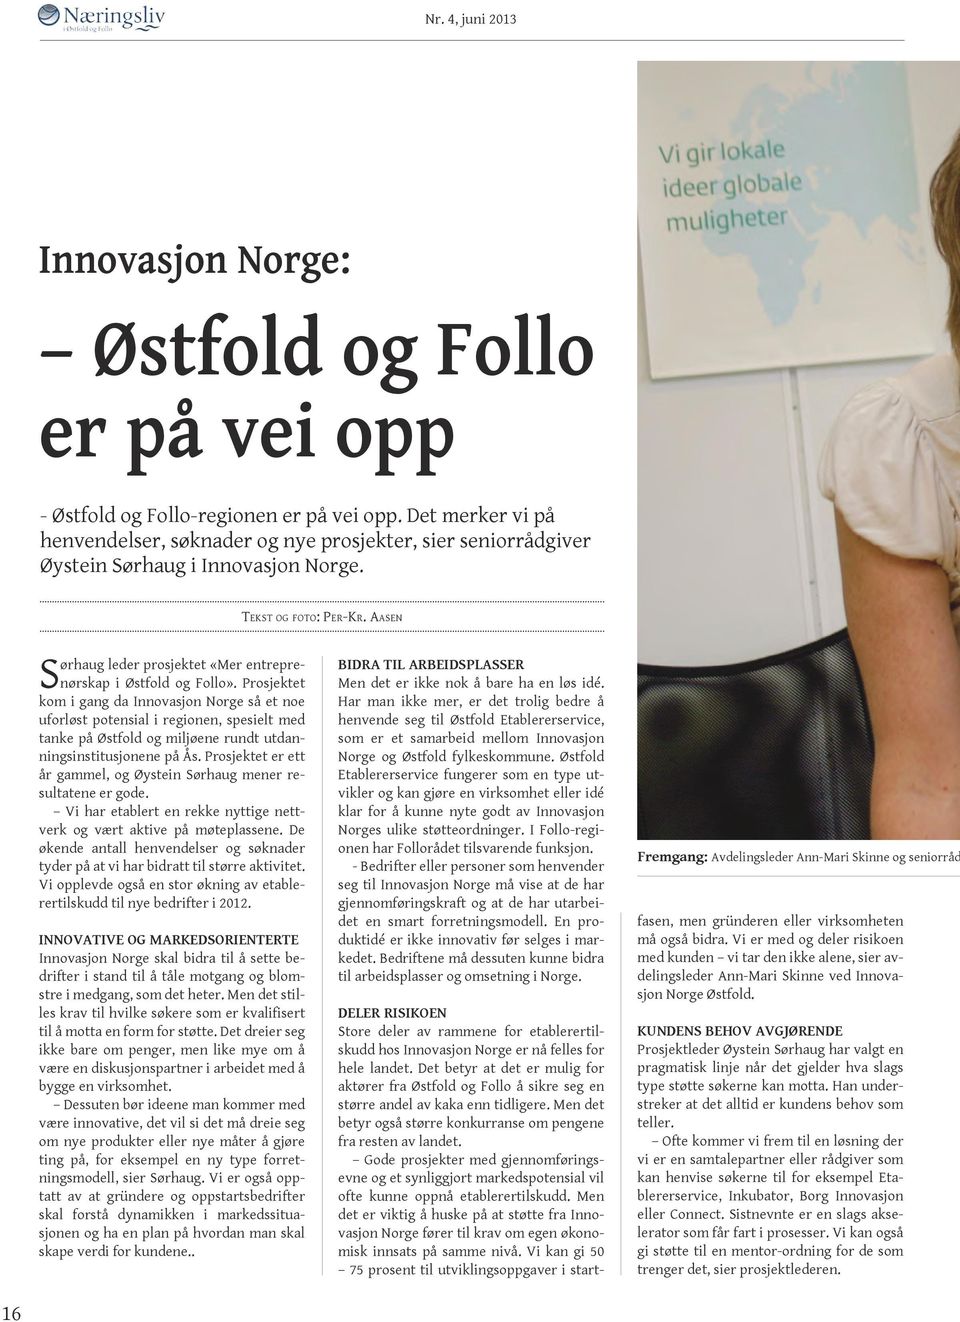 Aasen Sørhaug leder prosjektet «Mer entreprenørskap i Østfold og Follo».